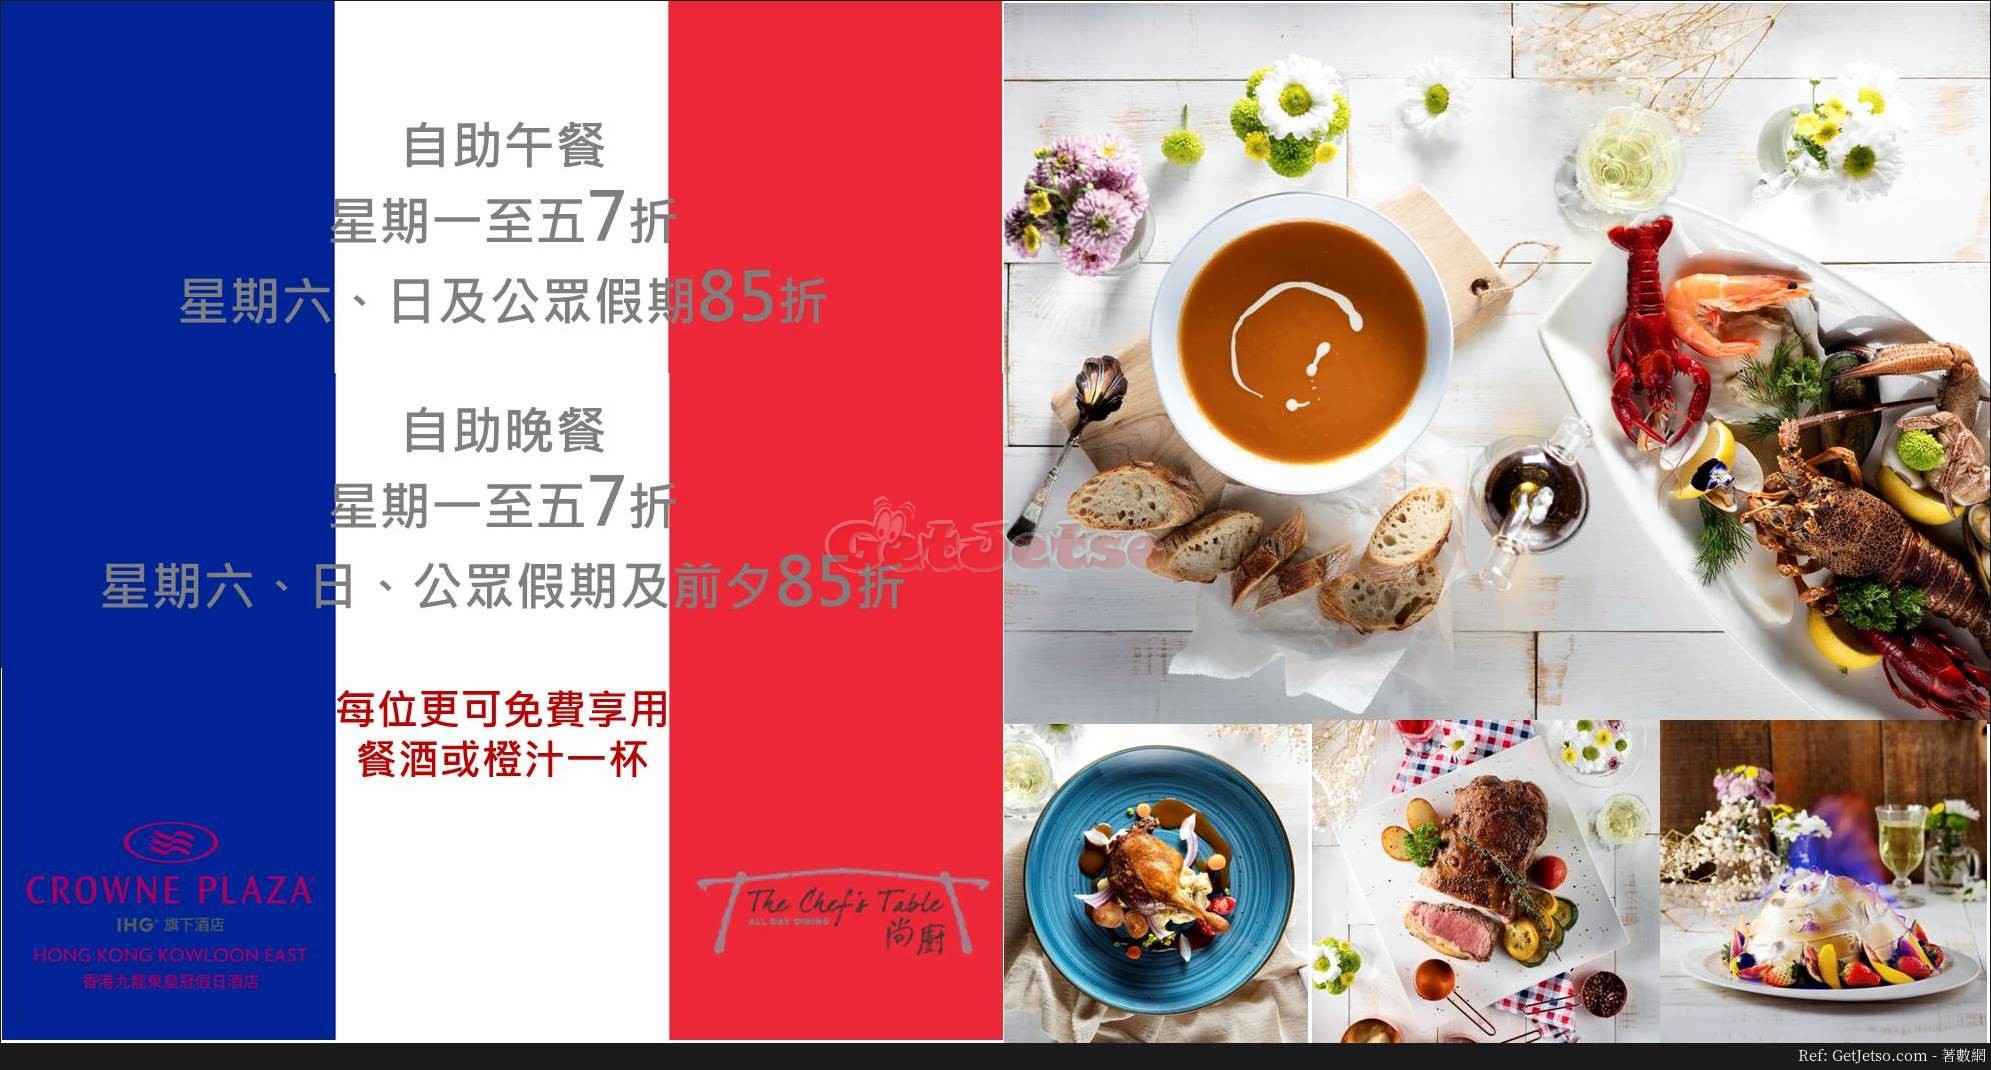 九龍東皇冠假日酒店自助餐低至7折優惠(至18年4月30日)圖片1